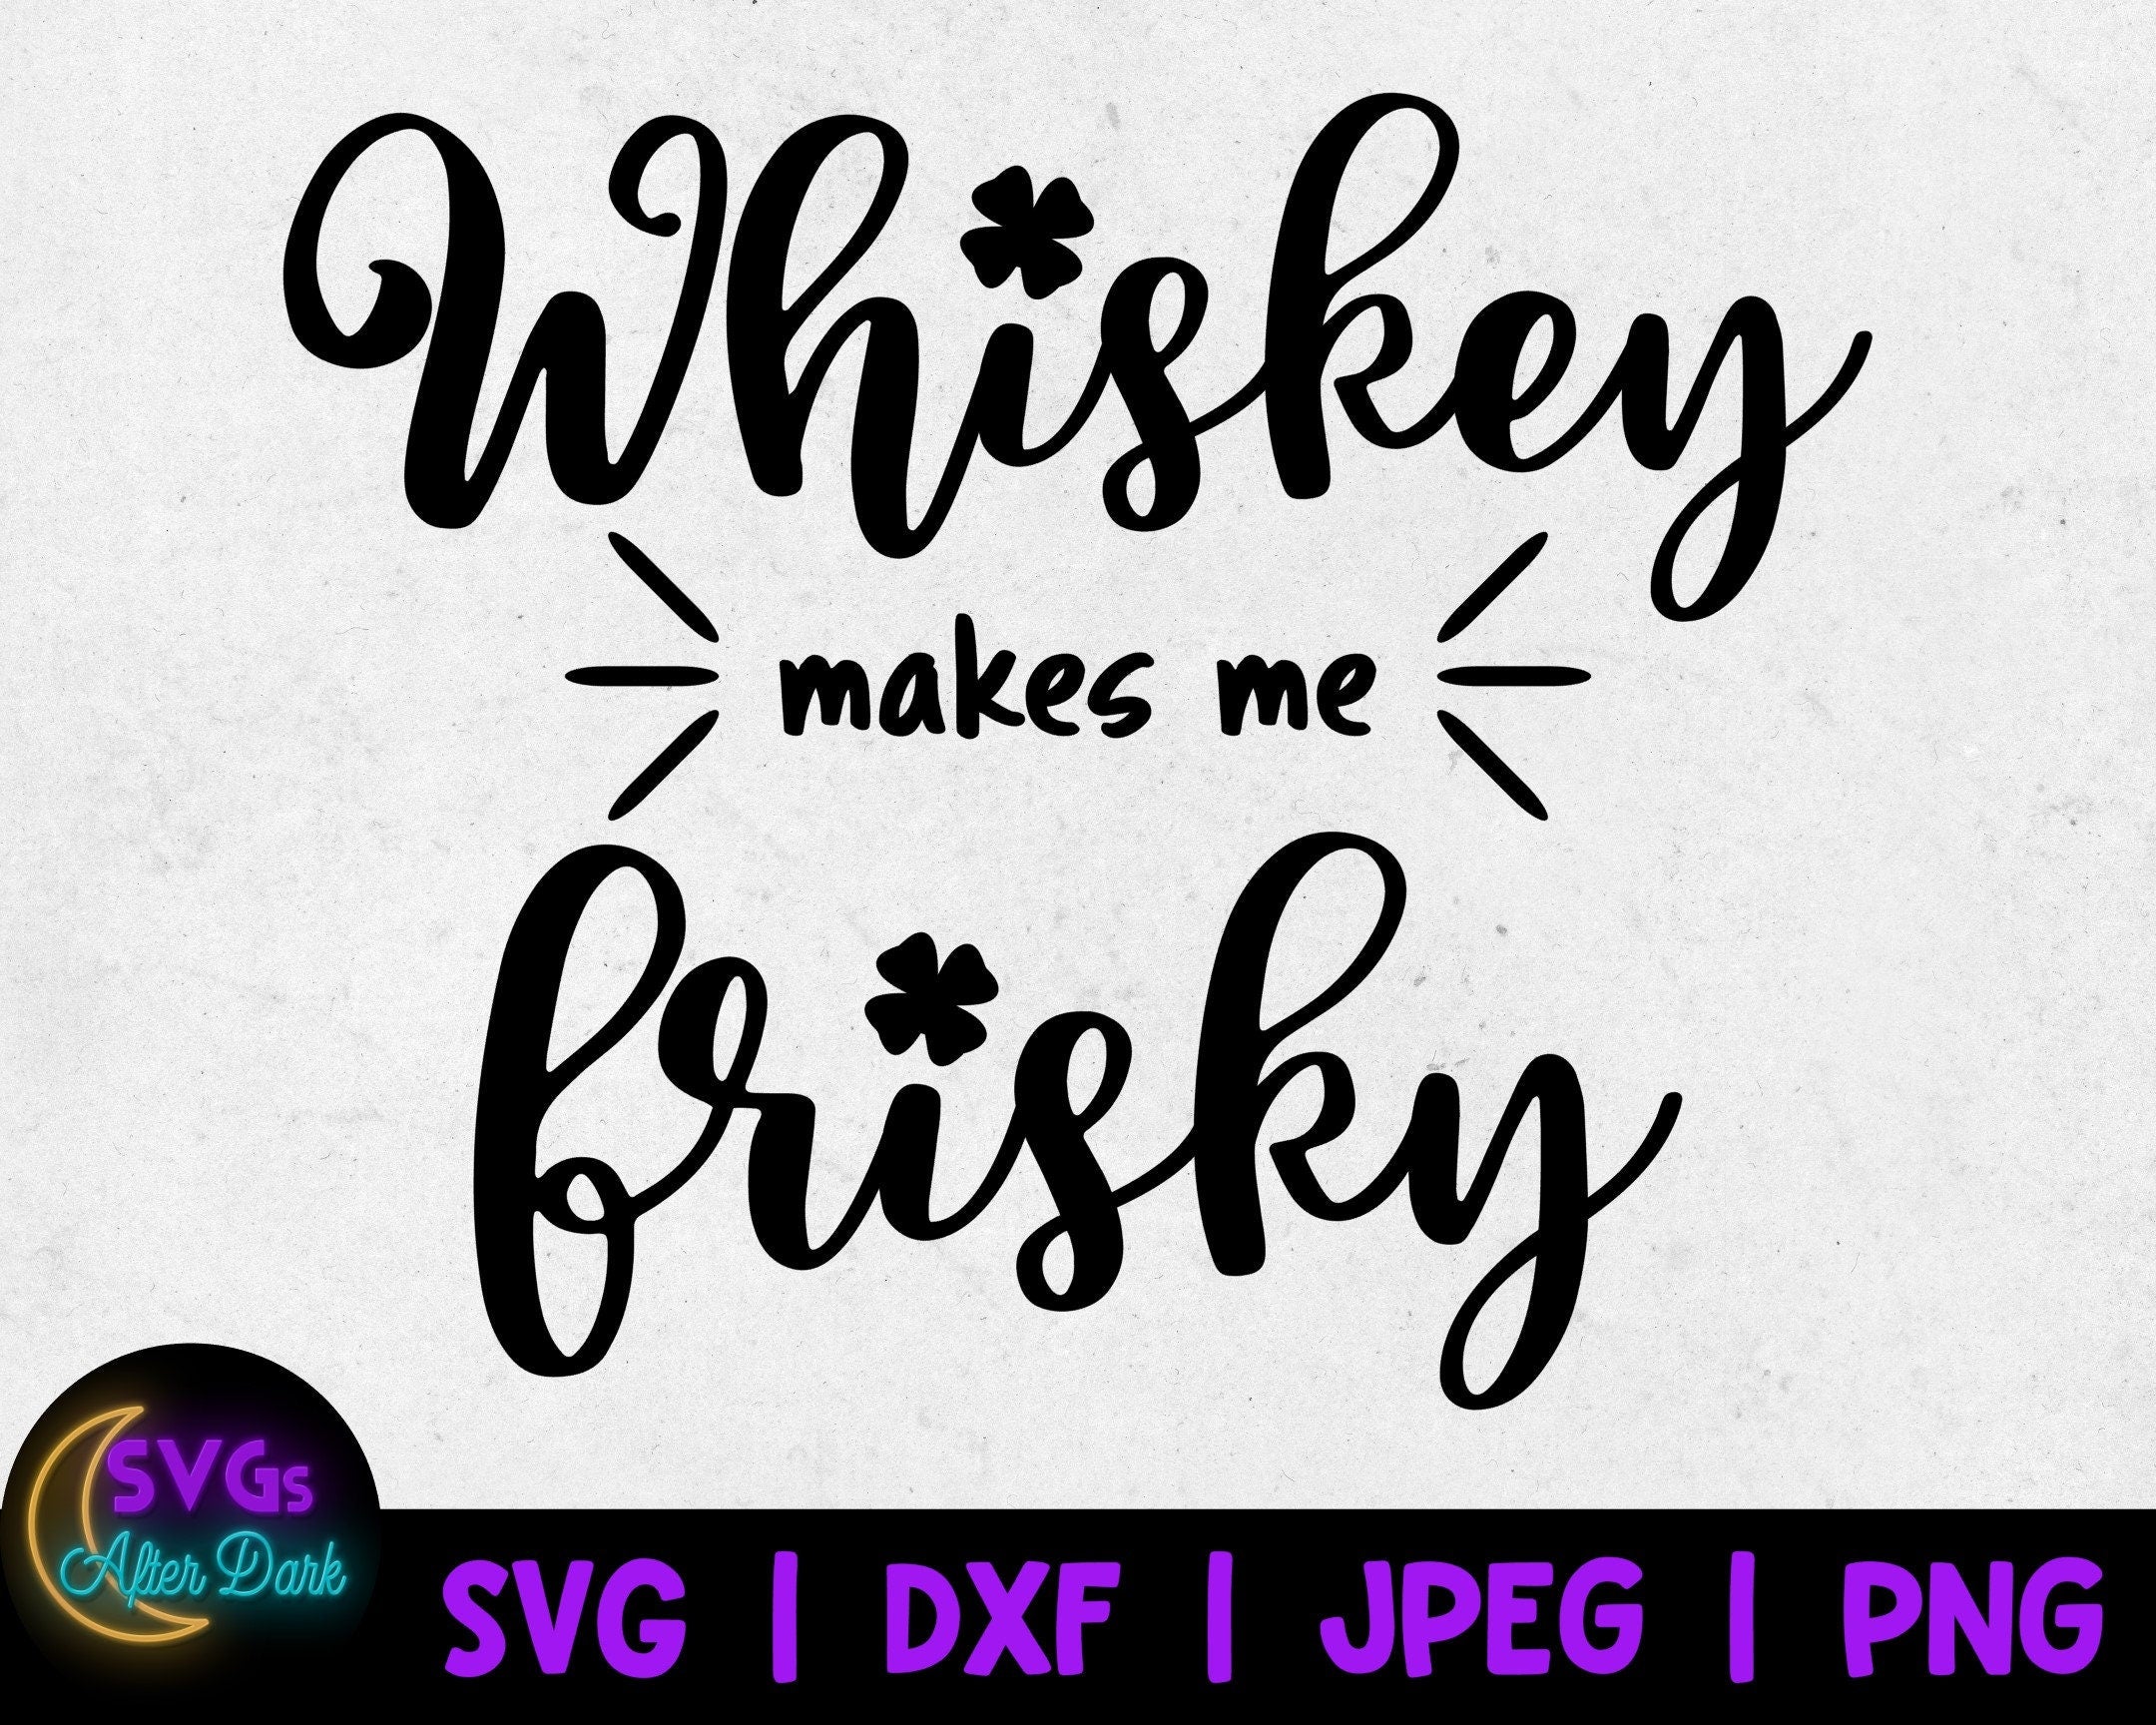 NSFW SVG - Whiskey Makes me Frisky SVG - Dirty St. Patrick's Day Svg - Adult Cricut Svg File